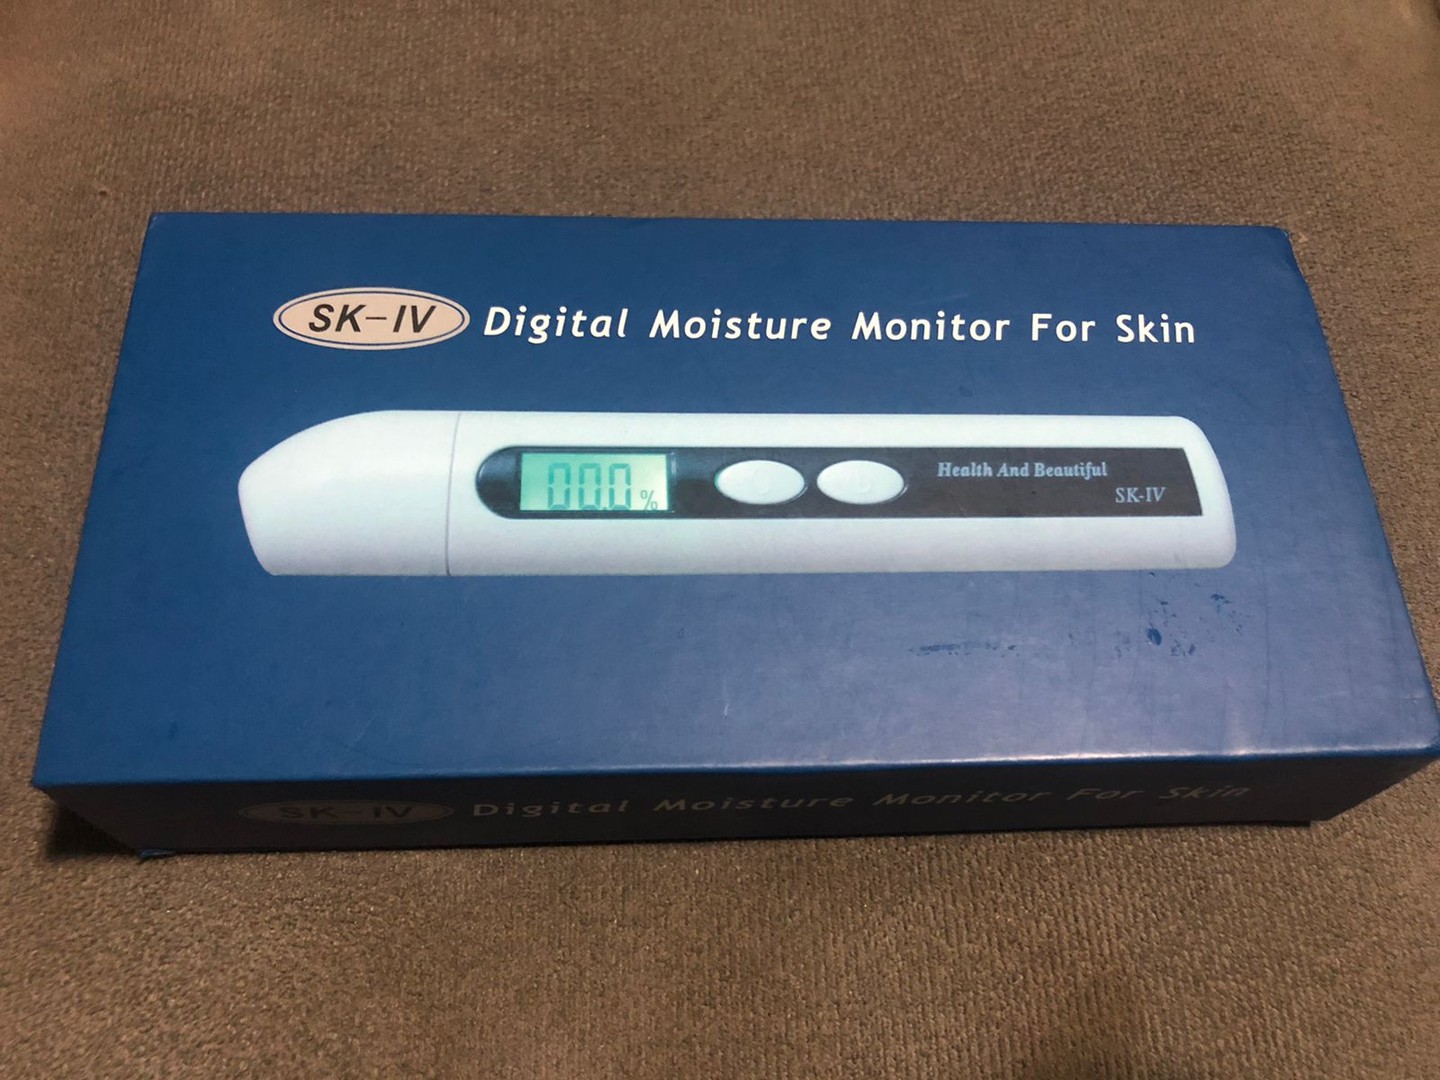 salud y belleza - Digital Moisture monitor for skin. Monitor digital medidor de humedad en la piel 0